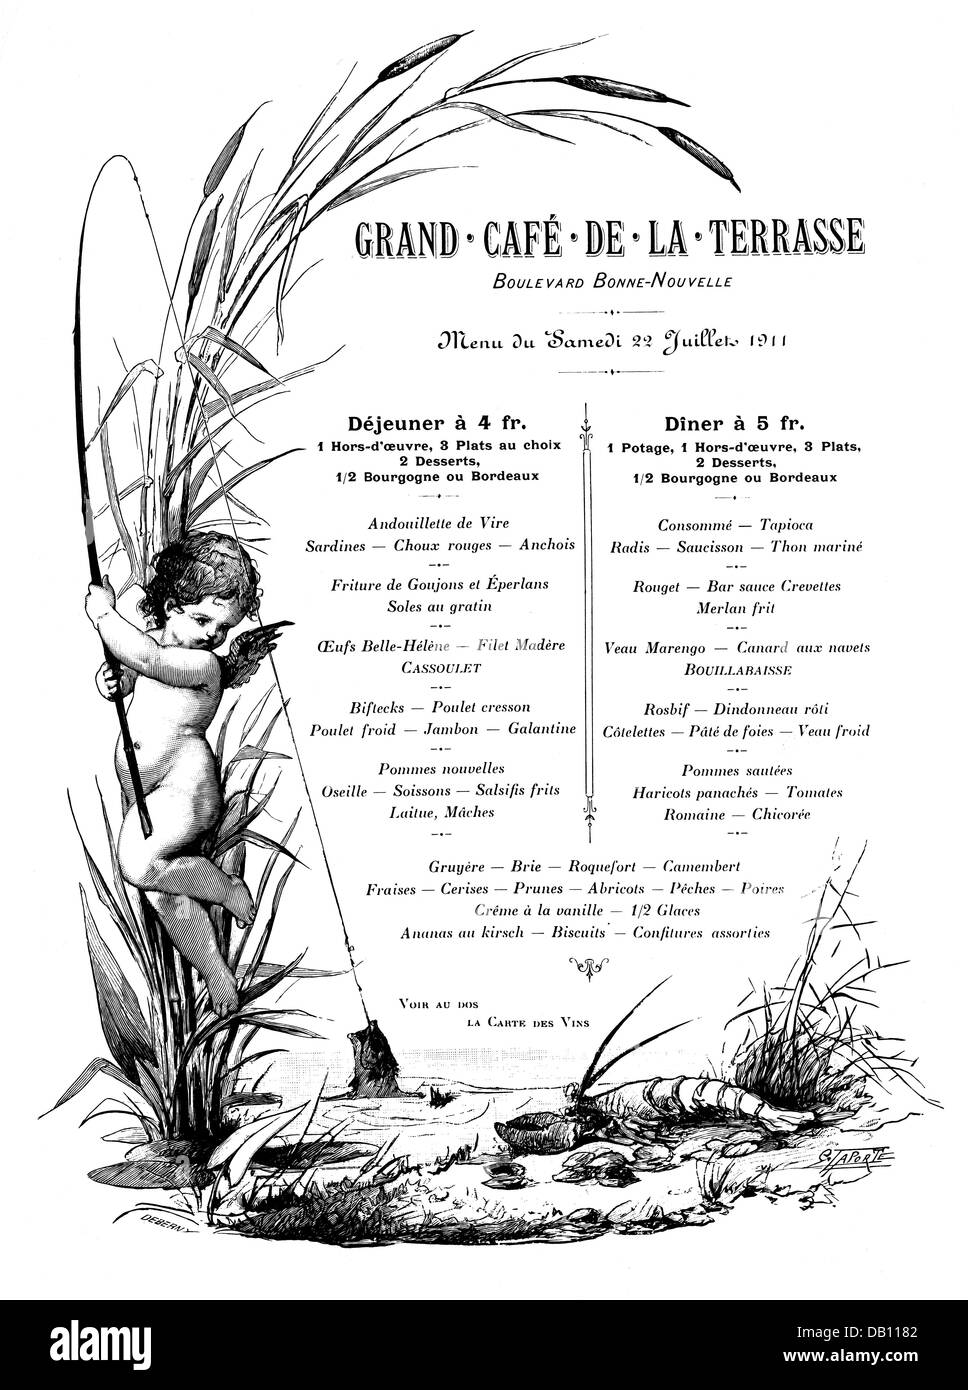 gastronomy, menu, lunch menu and dinner menu, 'Grand Cafe de la Terrasse', Boulevard Bonne-Nouvelle, Paris, design: G.Laporte, 22.7.1911, Additional-Rights-Clearences-Not Available Stock Photo